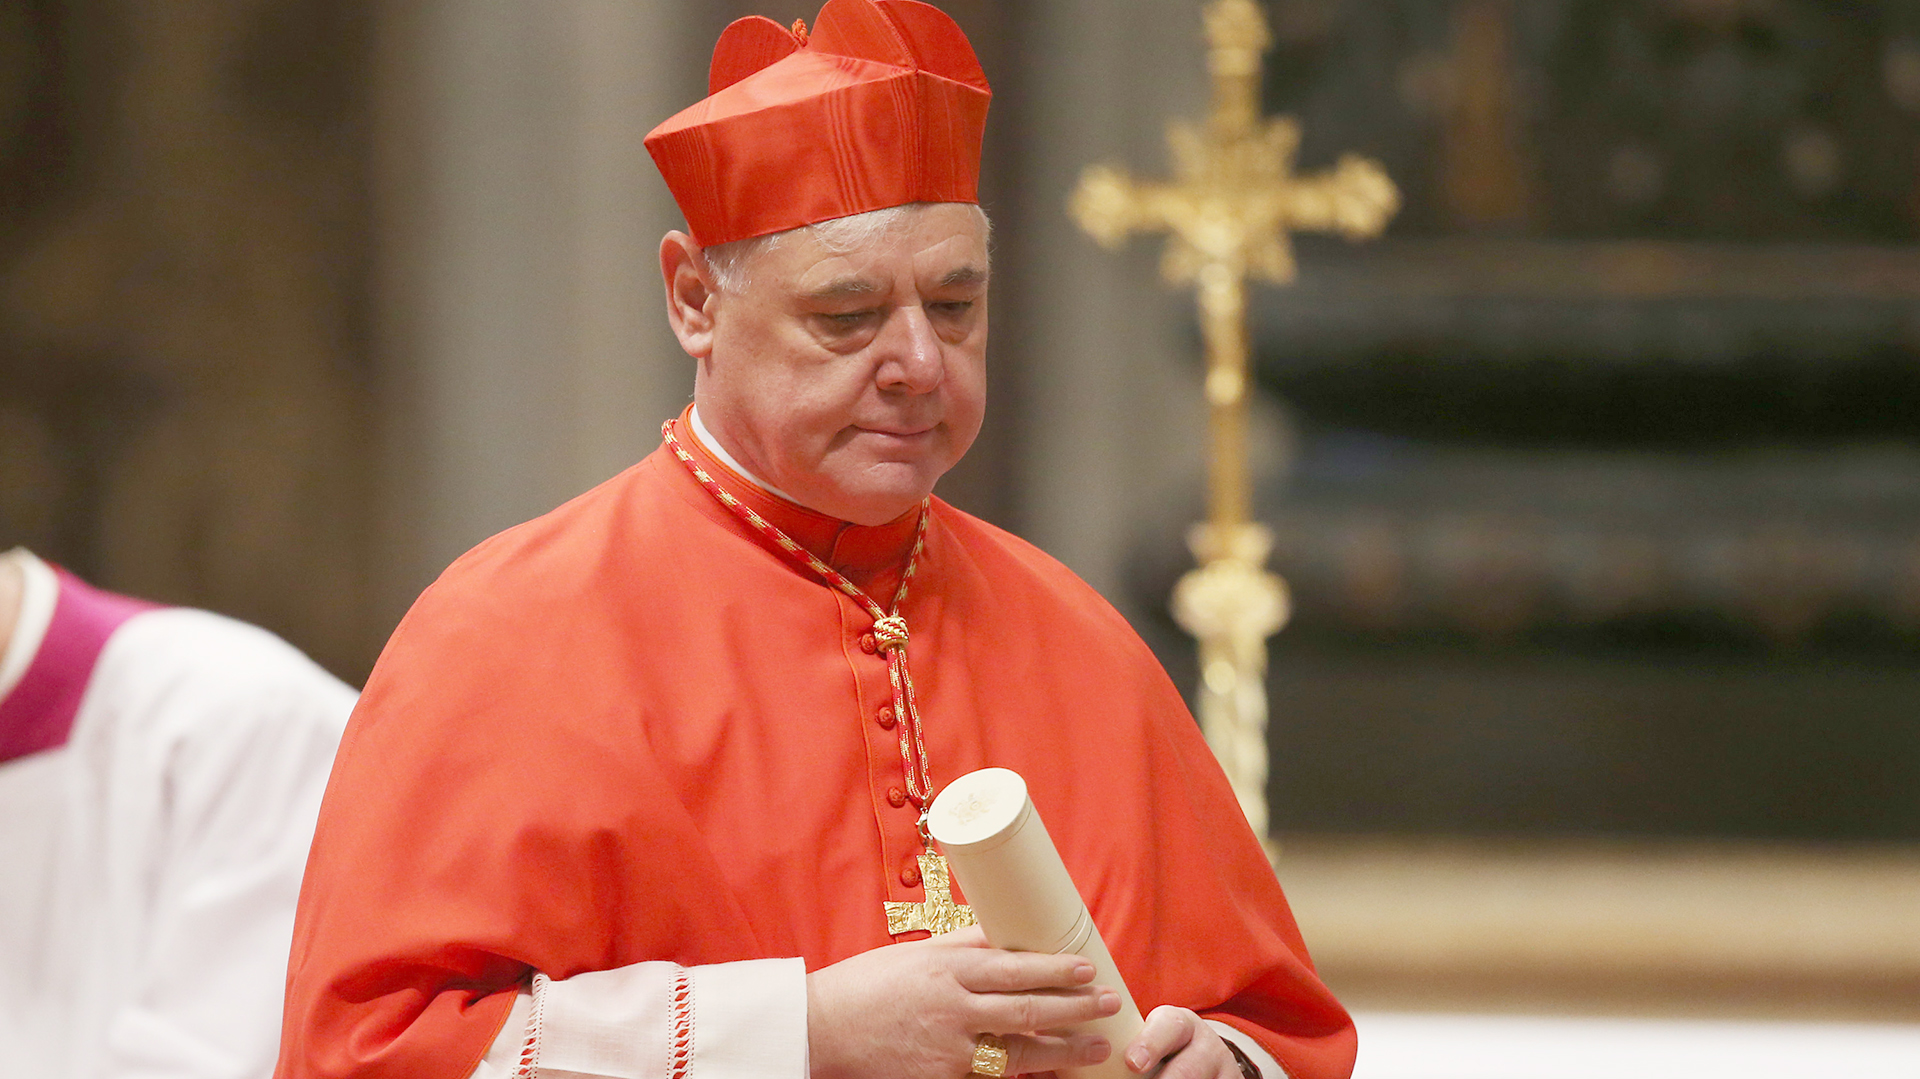 El cardenal Gerhard Muller es uno de los opositores del papa (Getty)